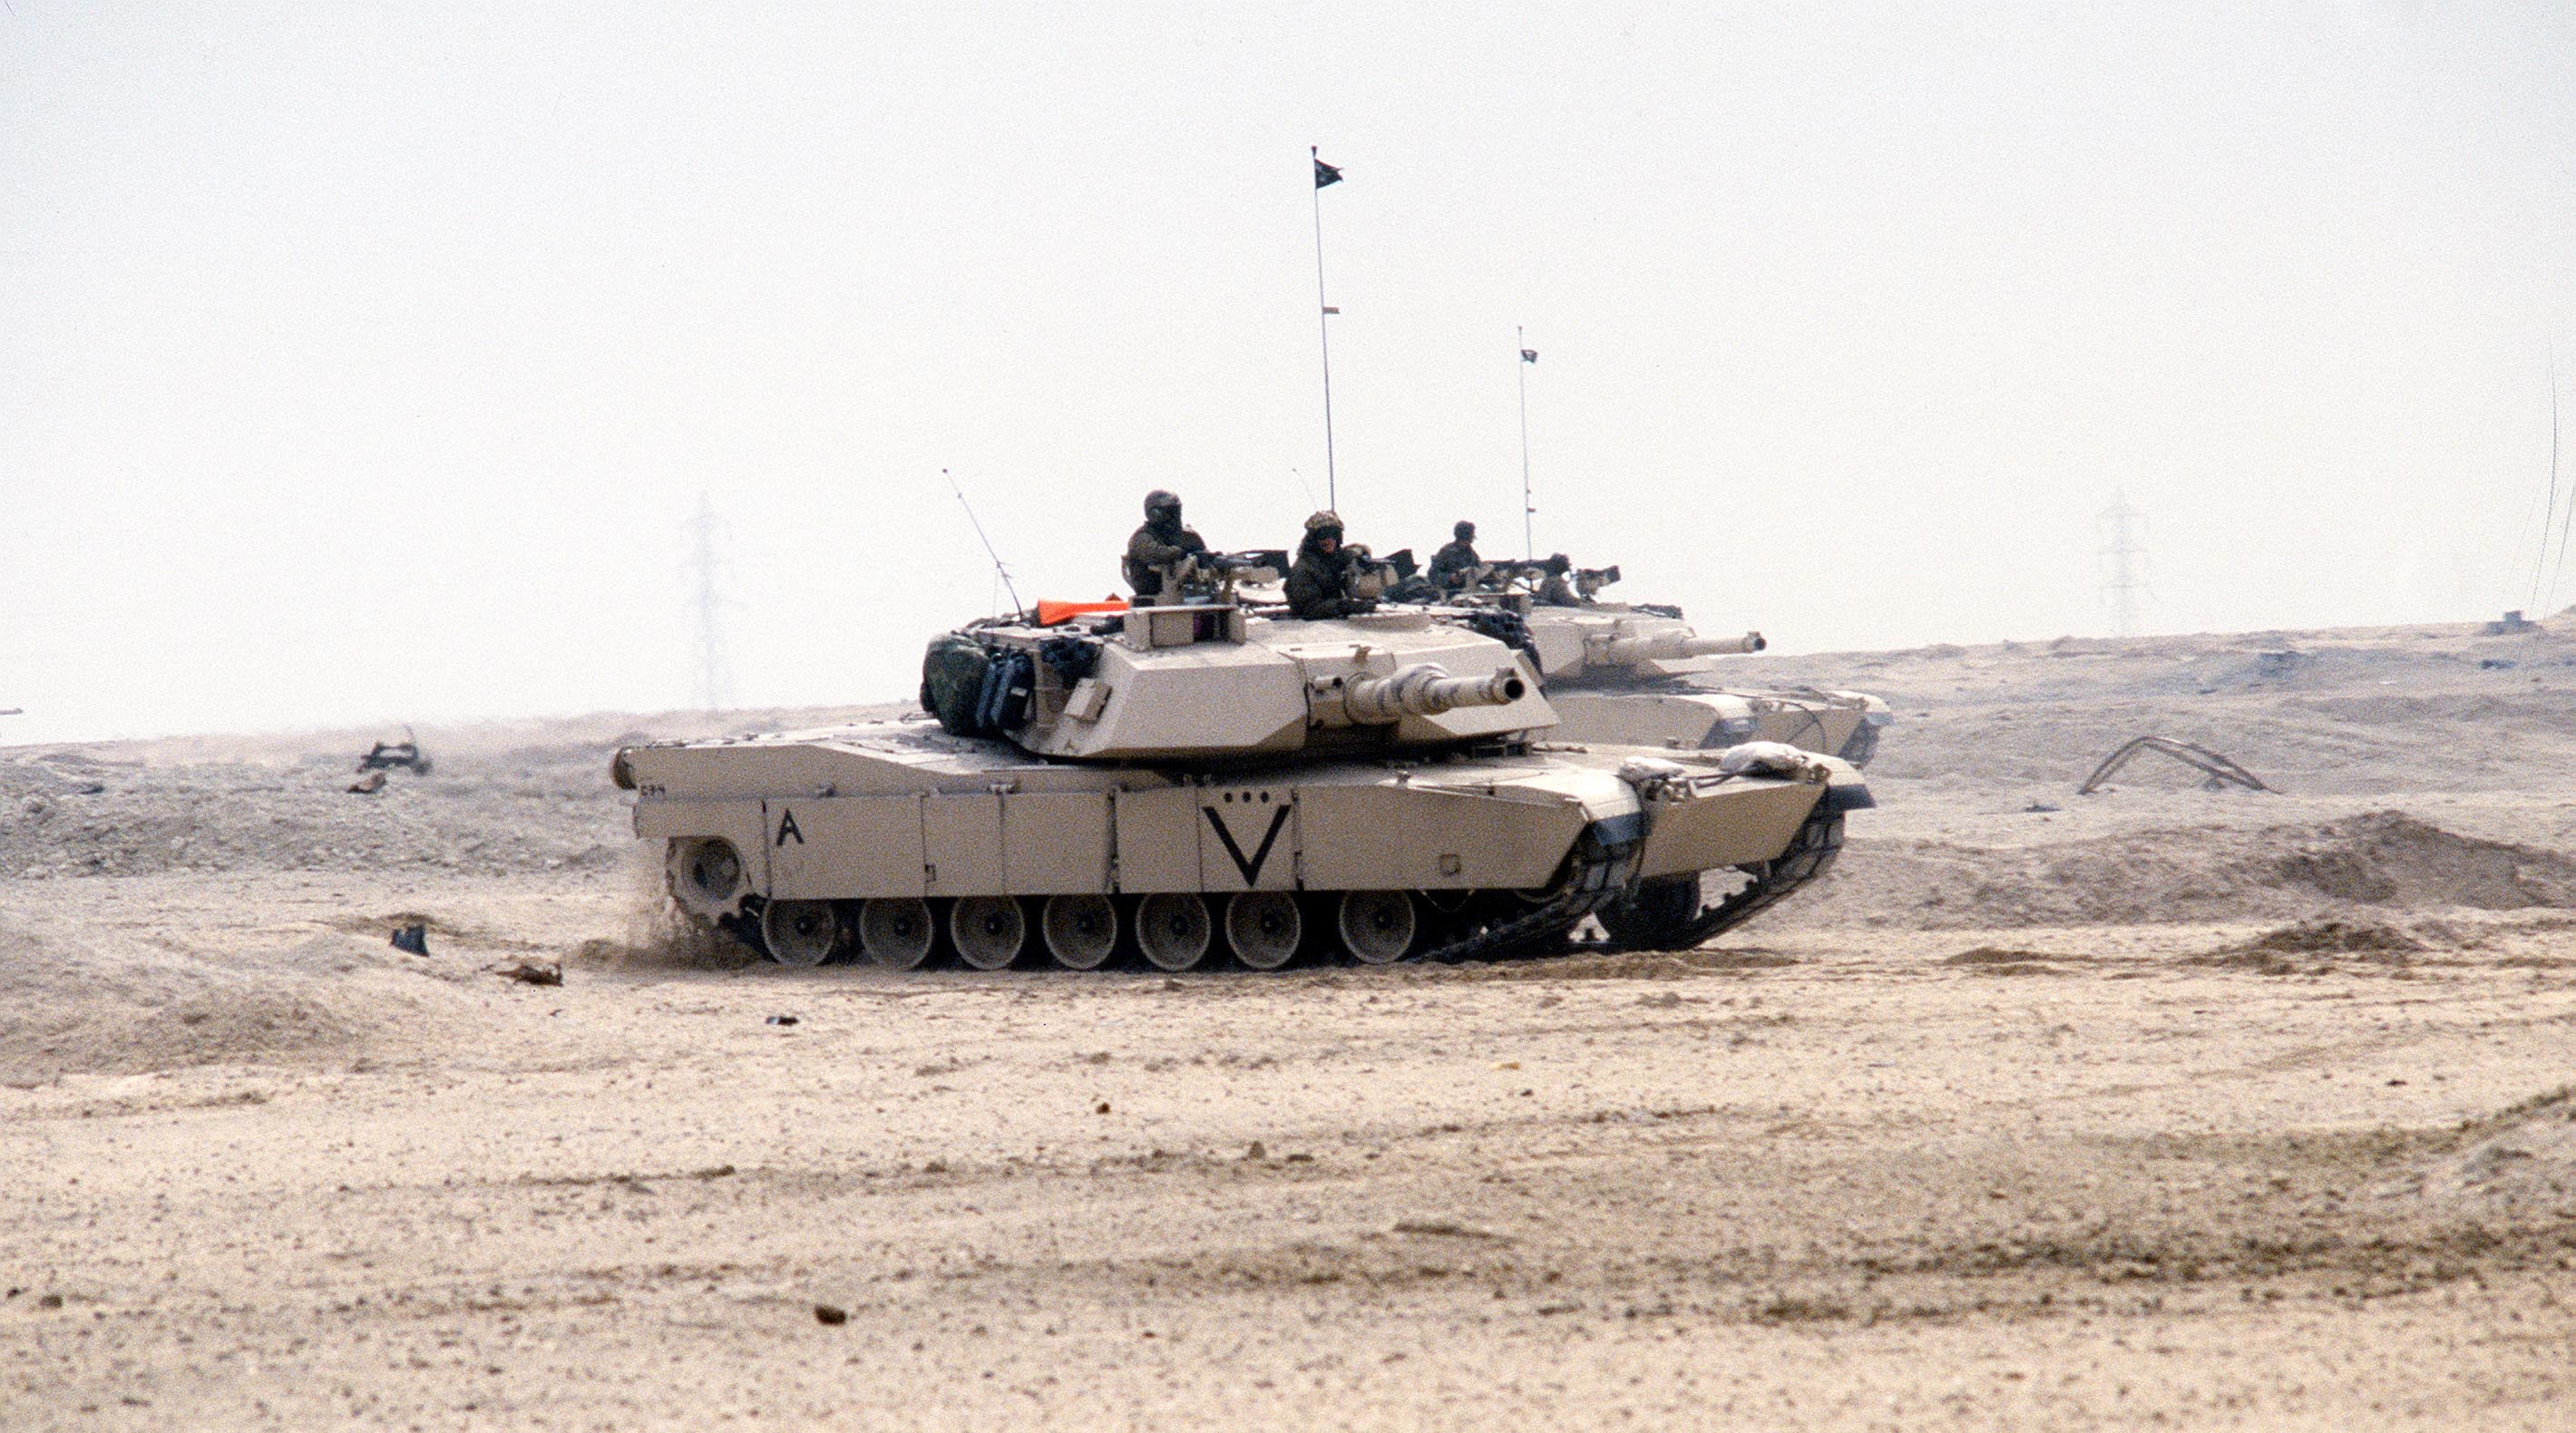 Marine tanks in Desert Storm